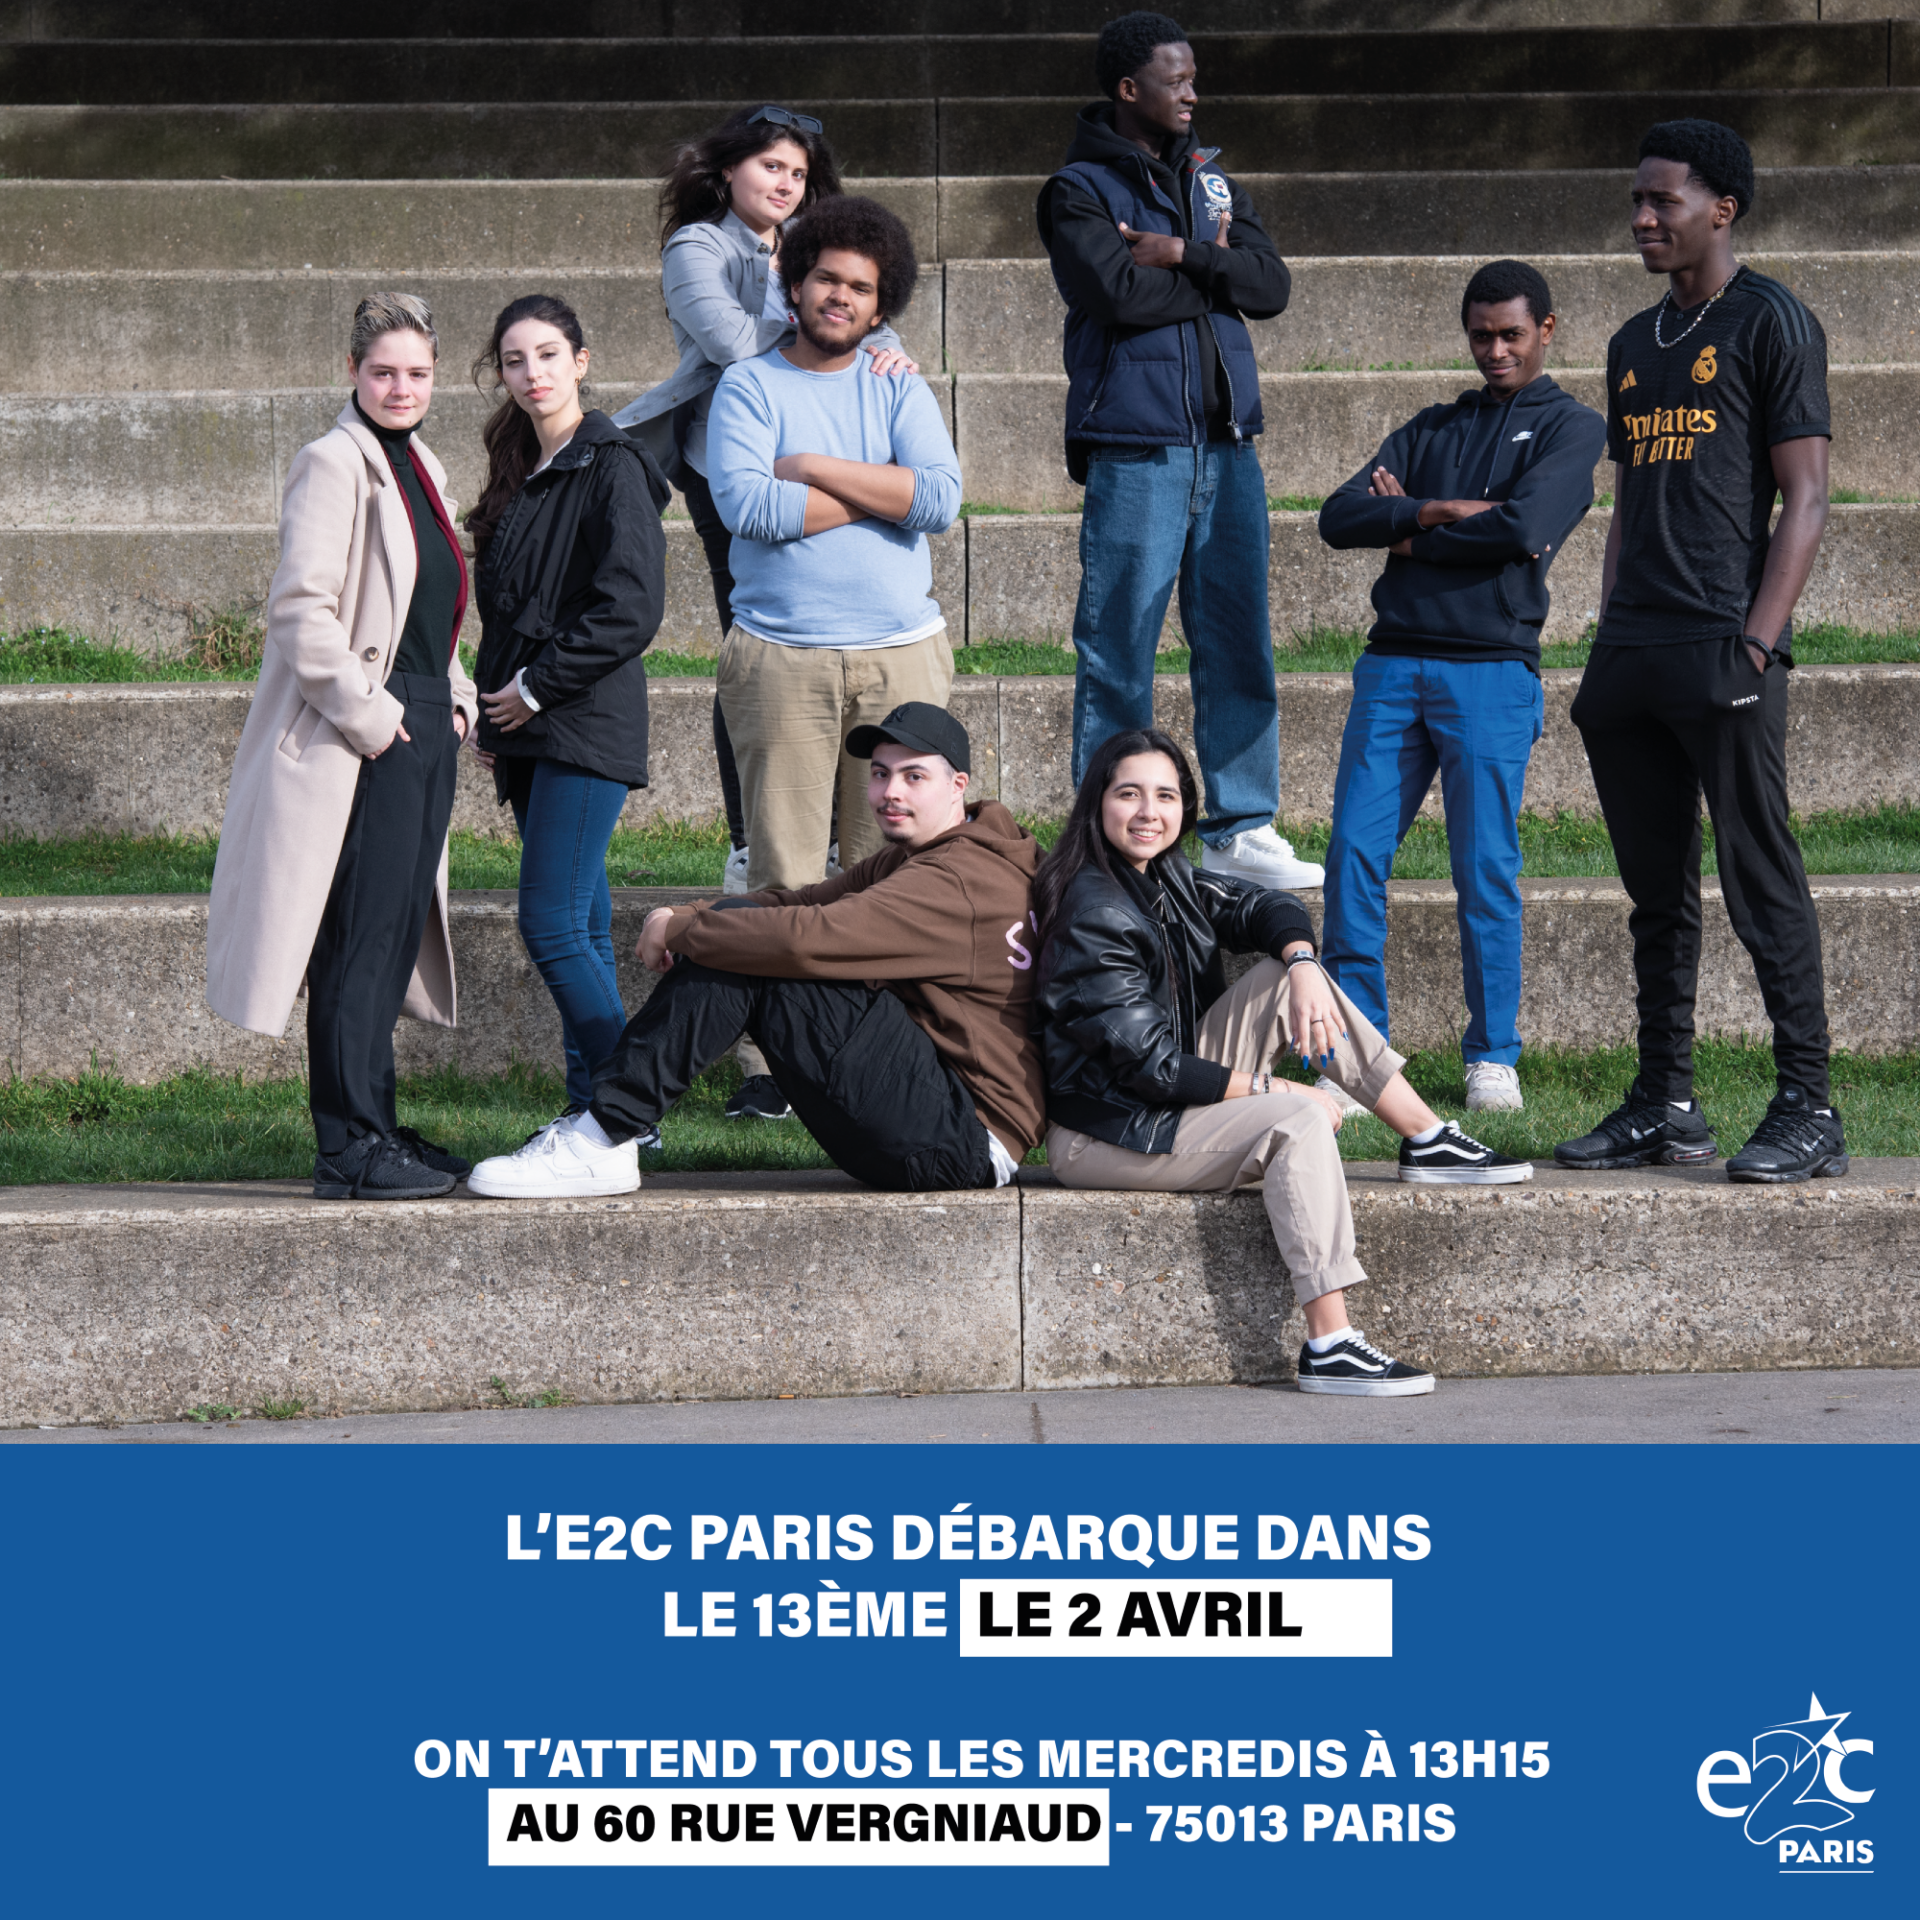 À partir du 2 avril prochain, l'E2C Paris ouvrira un tout nouveau site au 60 rue Vergniaud, dans le 13ème arrondissement de Paris. Une belle opportunité pour les jeunes habitants dans le sud de la capitale de construire leur projet professionnel.